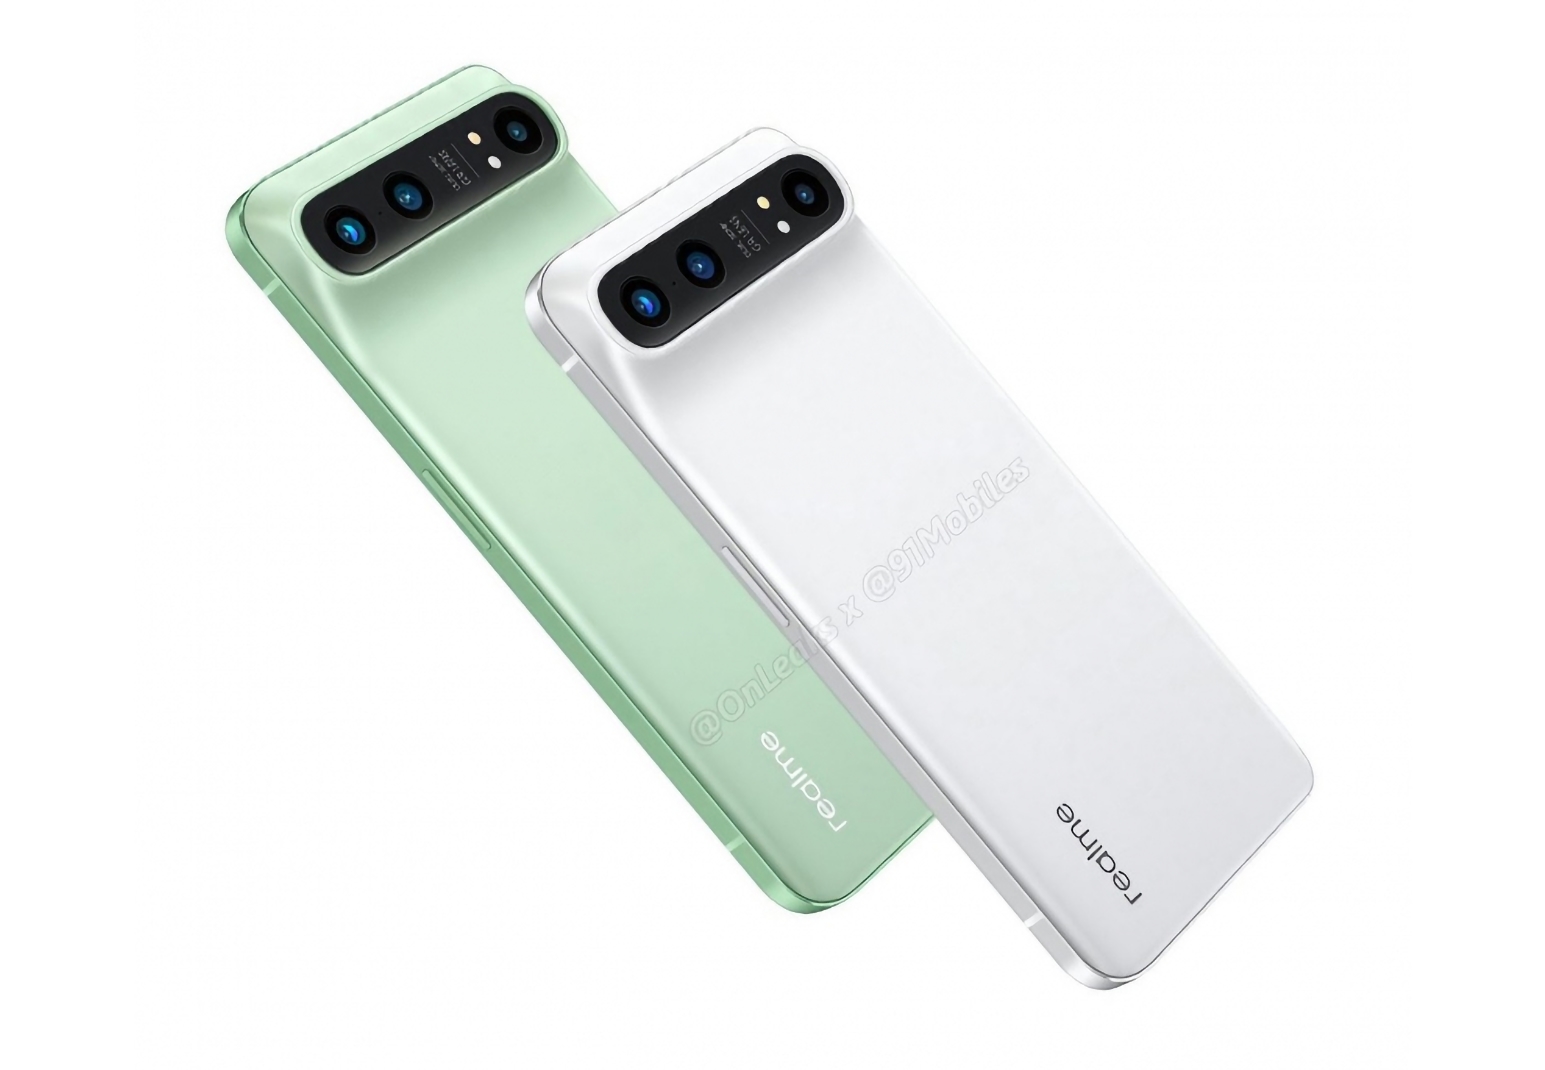 Realme оголосила про презентацію 20 грудня: чекаємо на анонс флагманської лінійки смартфонів Realme GT 2